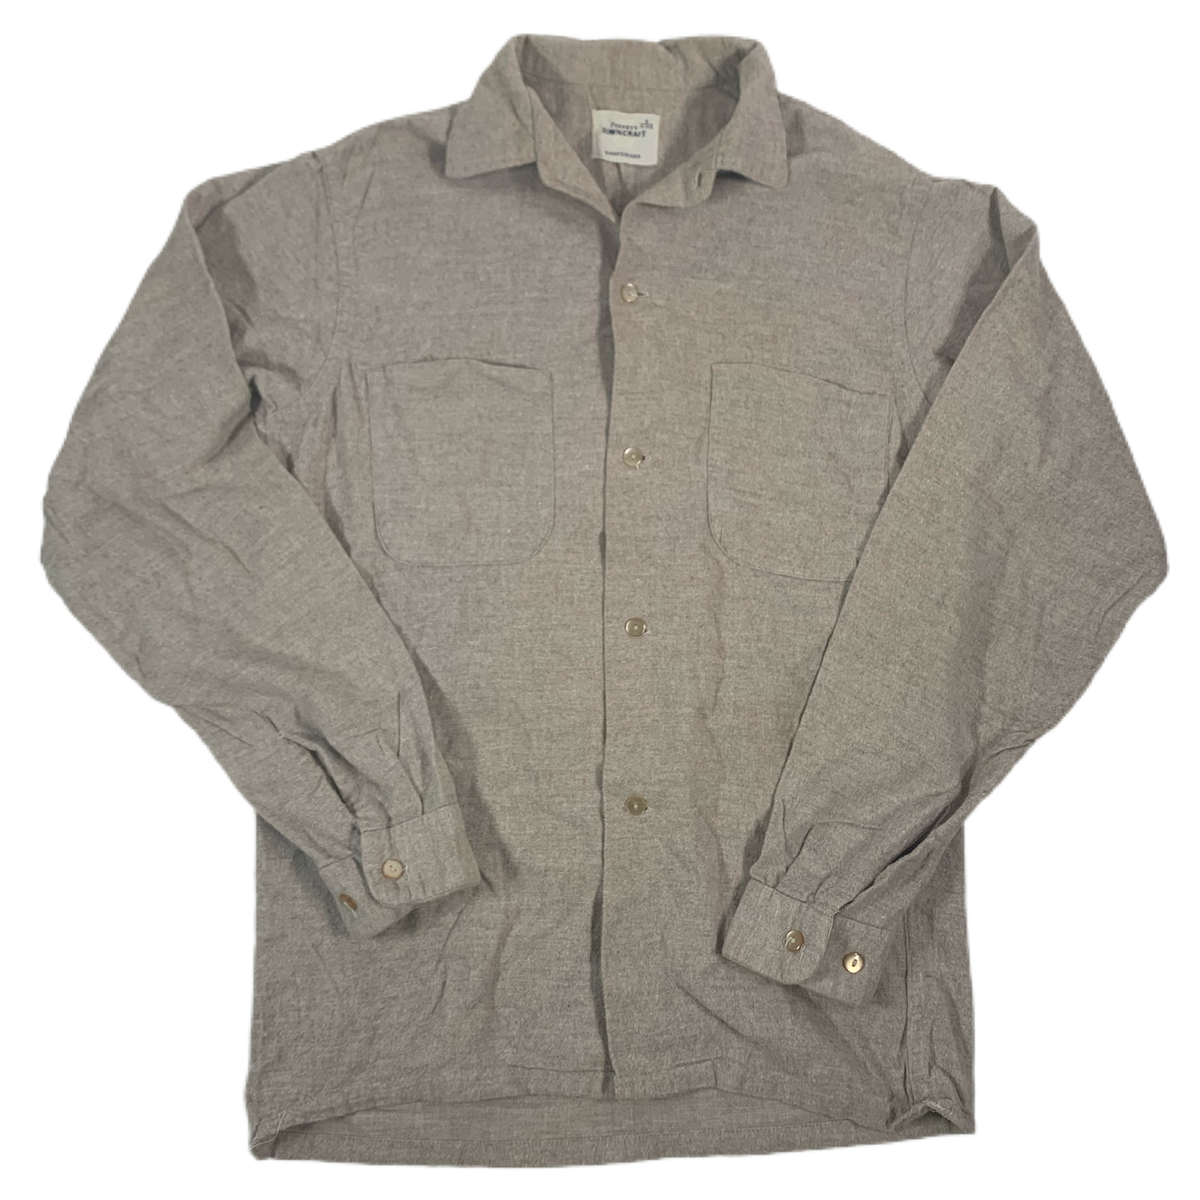 30%OFFVintage TOWN CRAFT work shirt 40s　jc pennys ペニーズ　タウンクラフト　ワークシャツ　ヤシの木タグ　ビンテージ Sサイズ